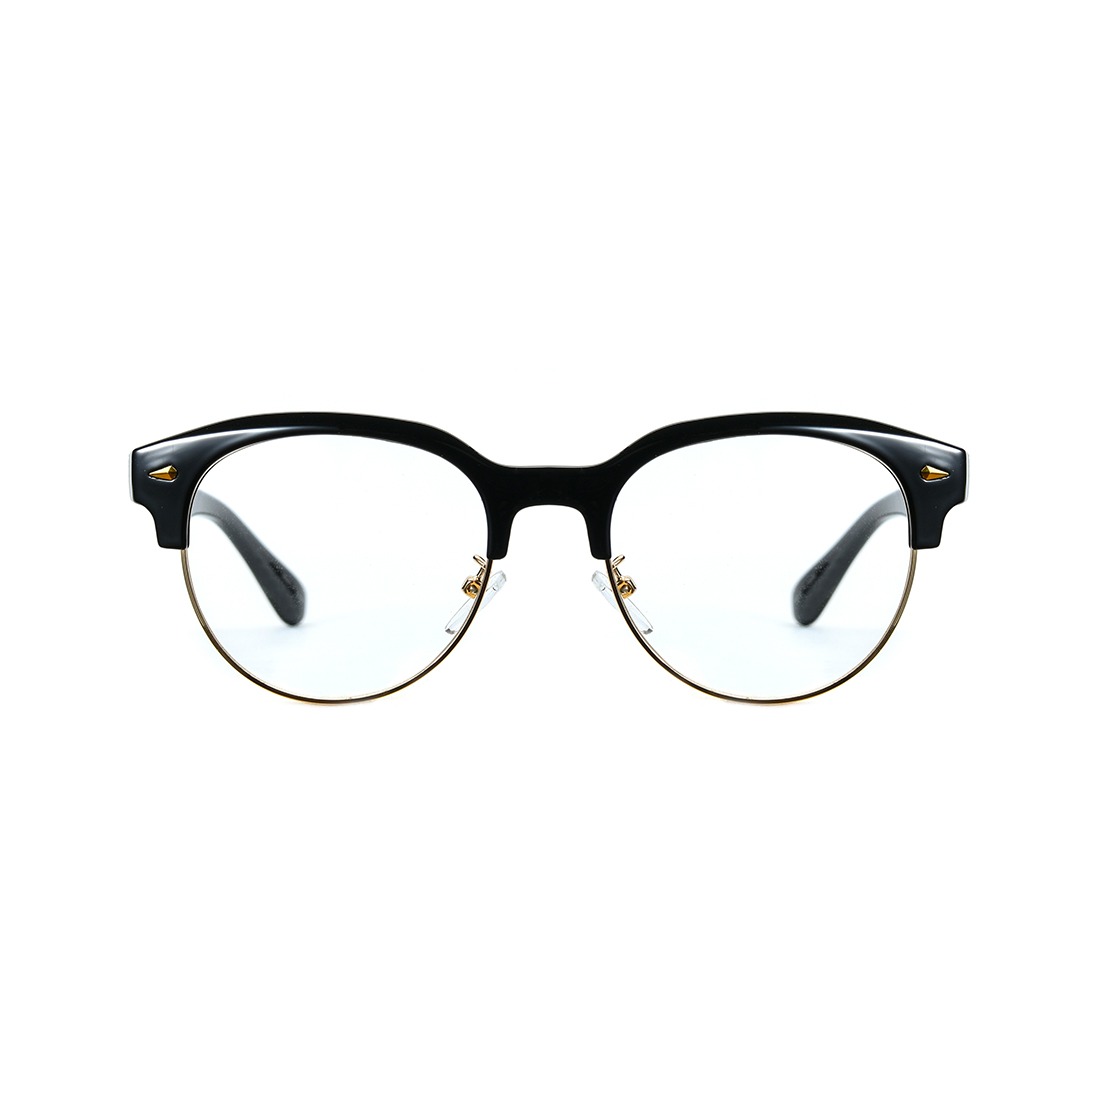 쿠글 안경 2105